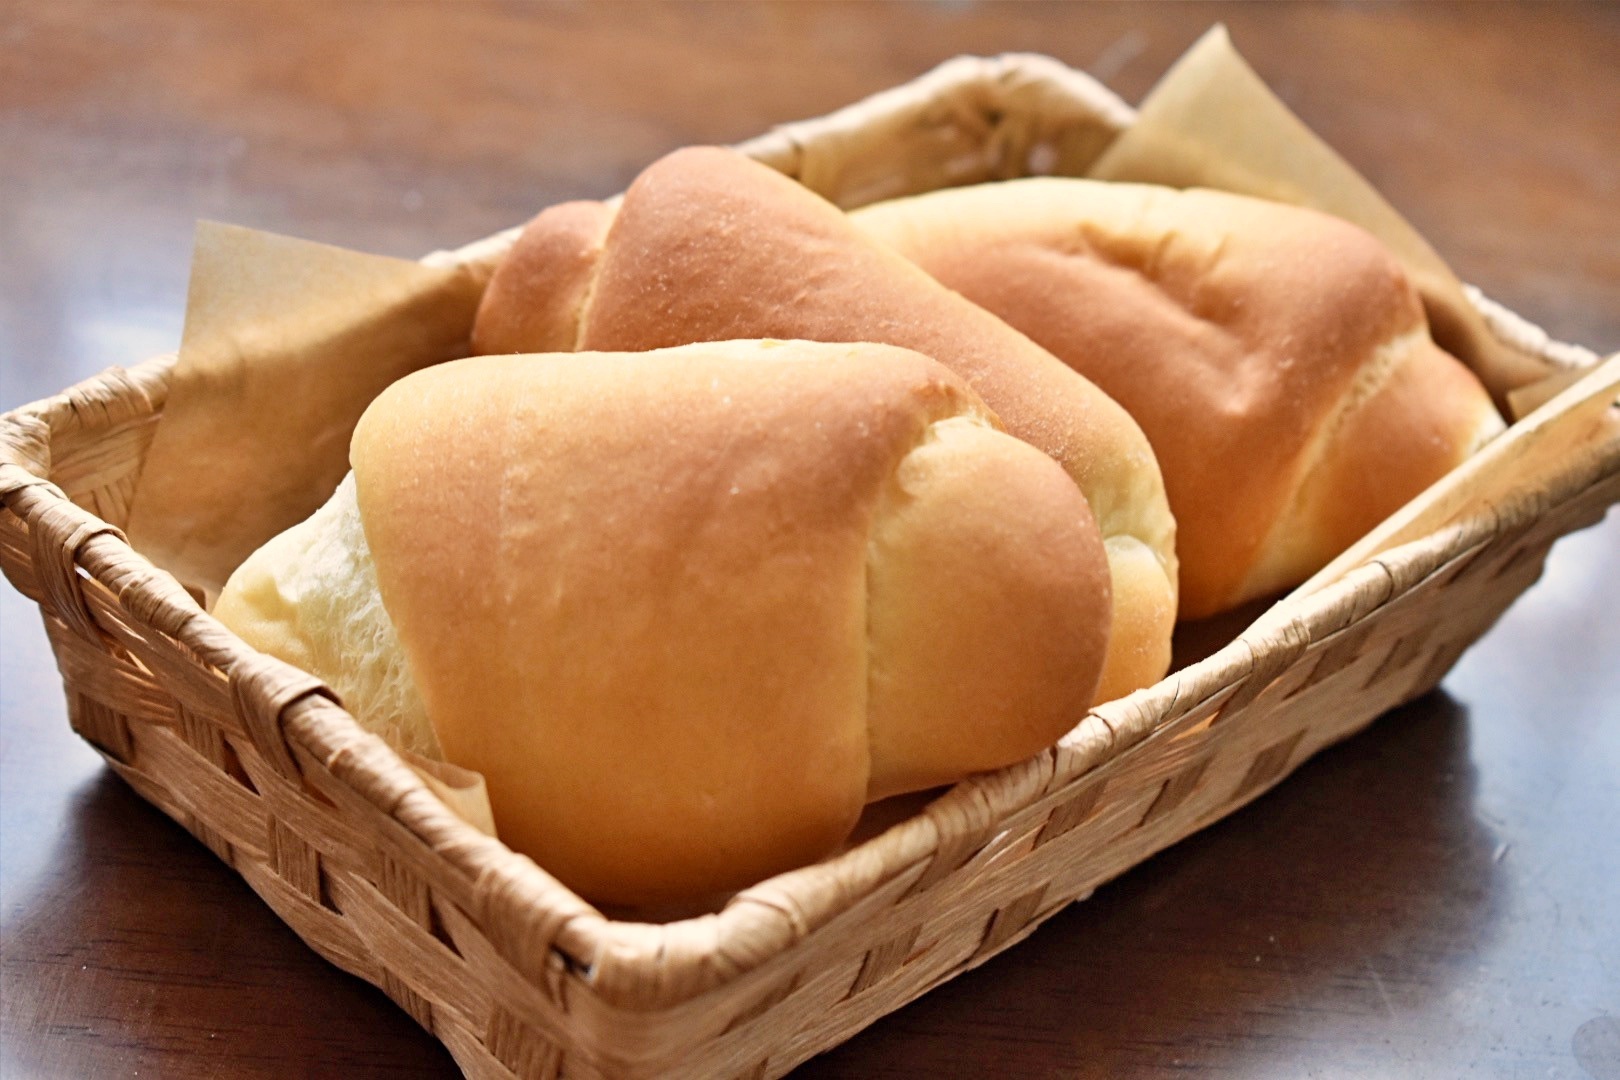 市販の低糖質パンを実際に食べてみた感想 - かぺりんのブログ